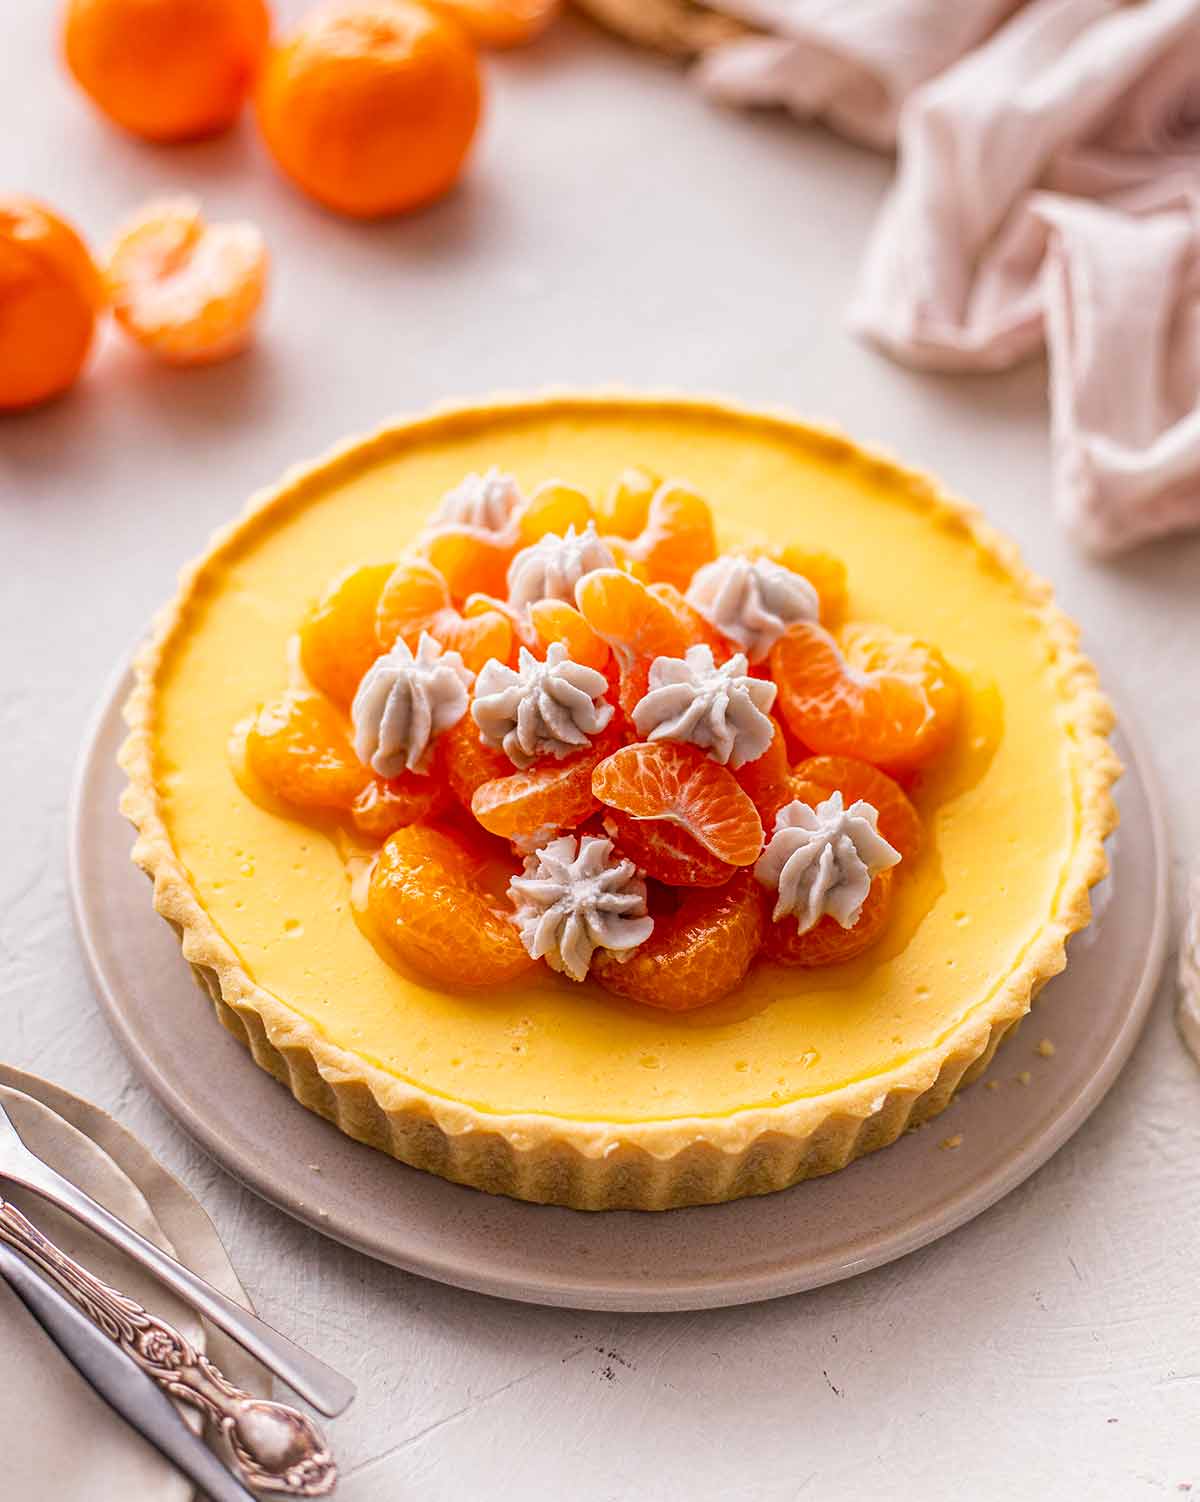 Mandarin tart on white plate.